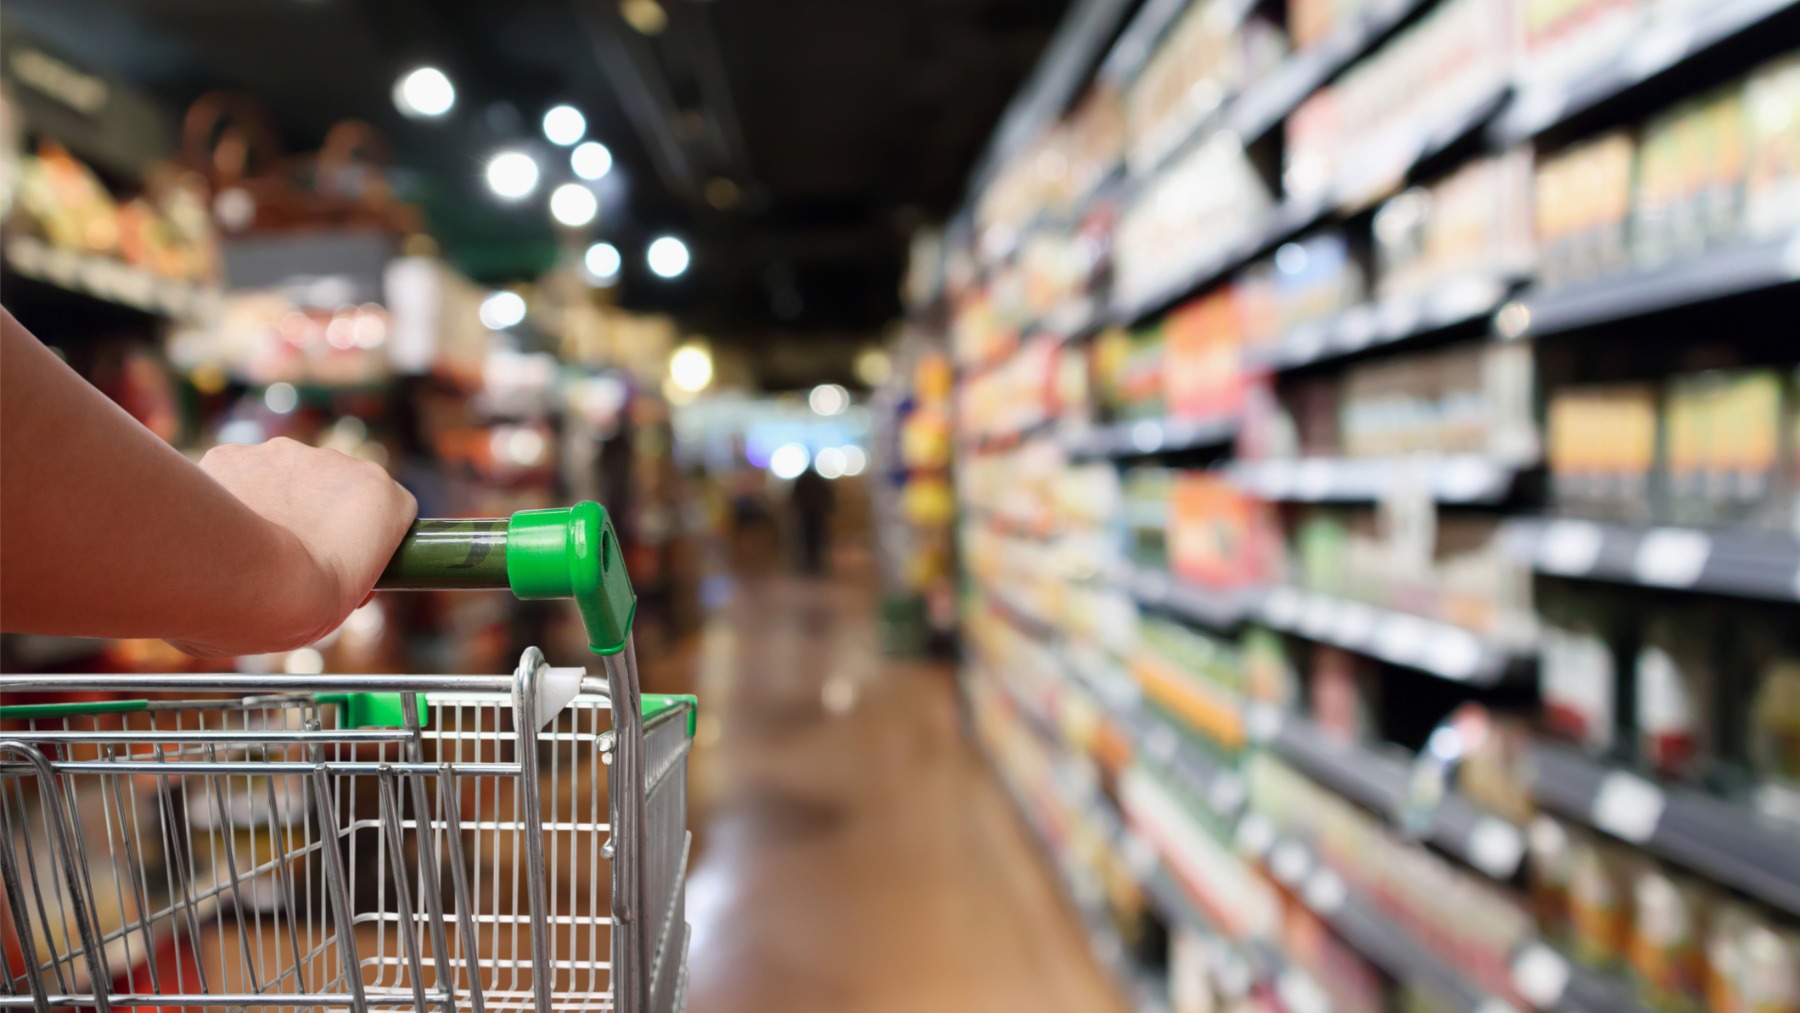 Los productos que más se roban en el supermercado